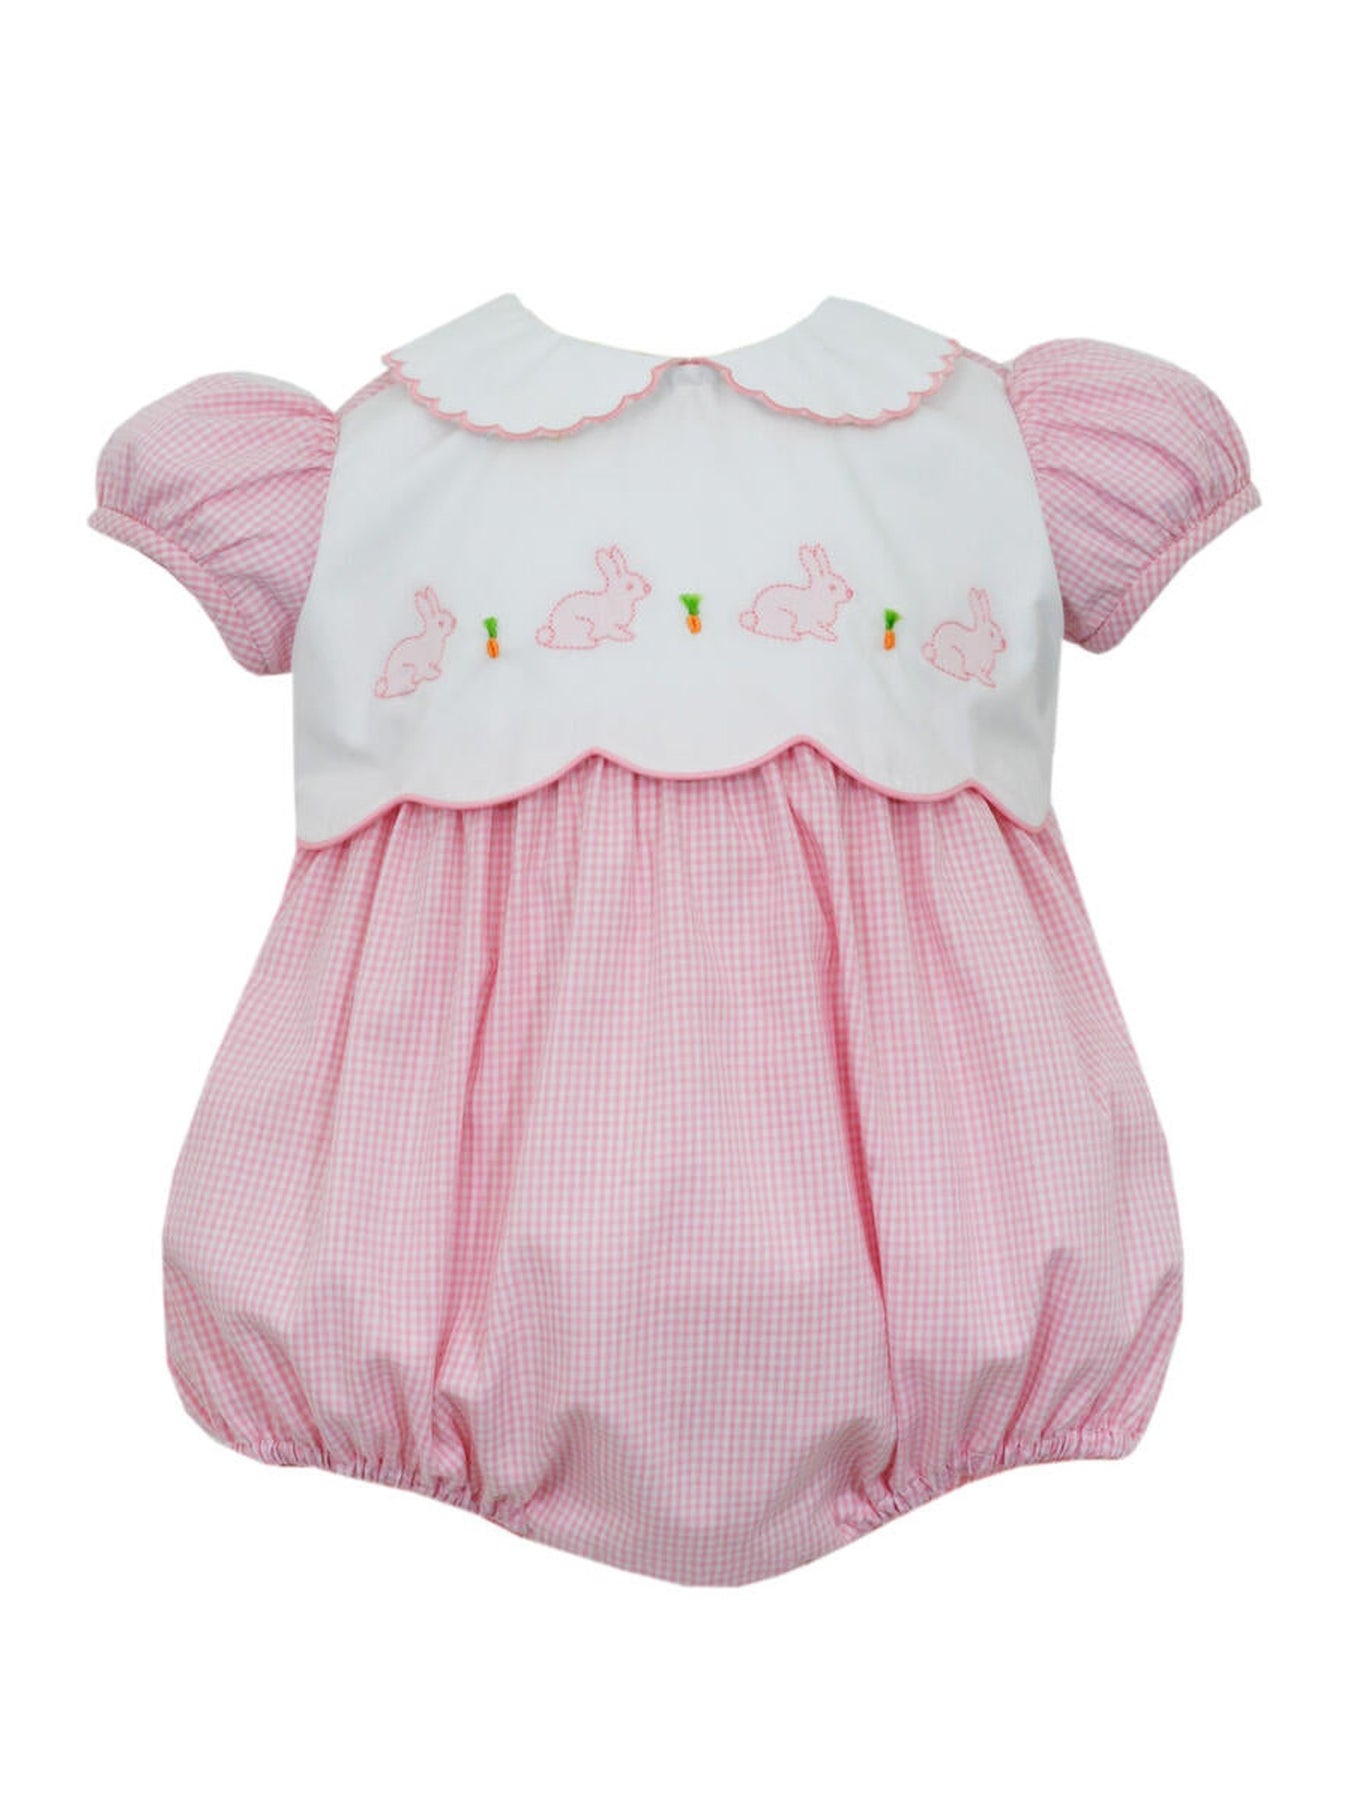 Baby Girl Clothes Boutique | Posh Tots Children's Boutique